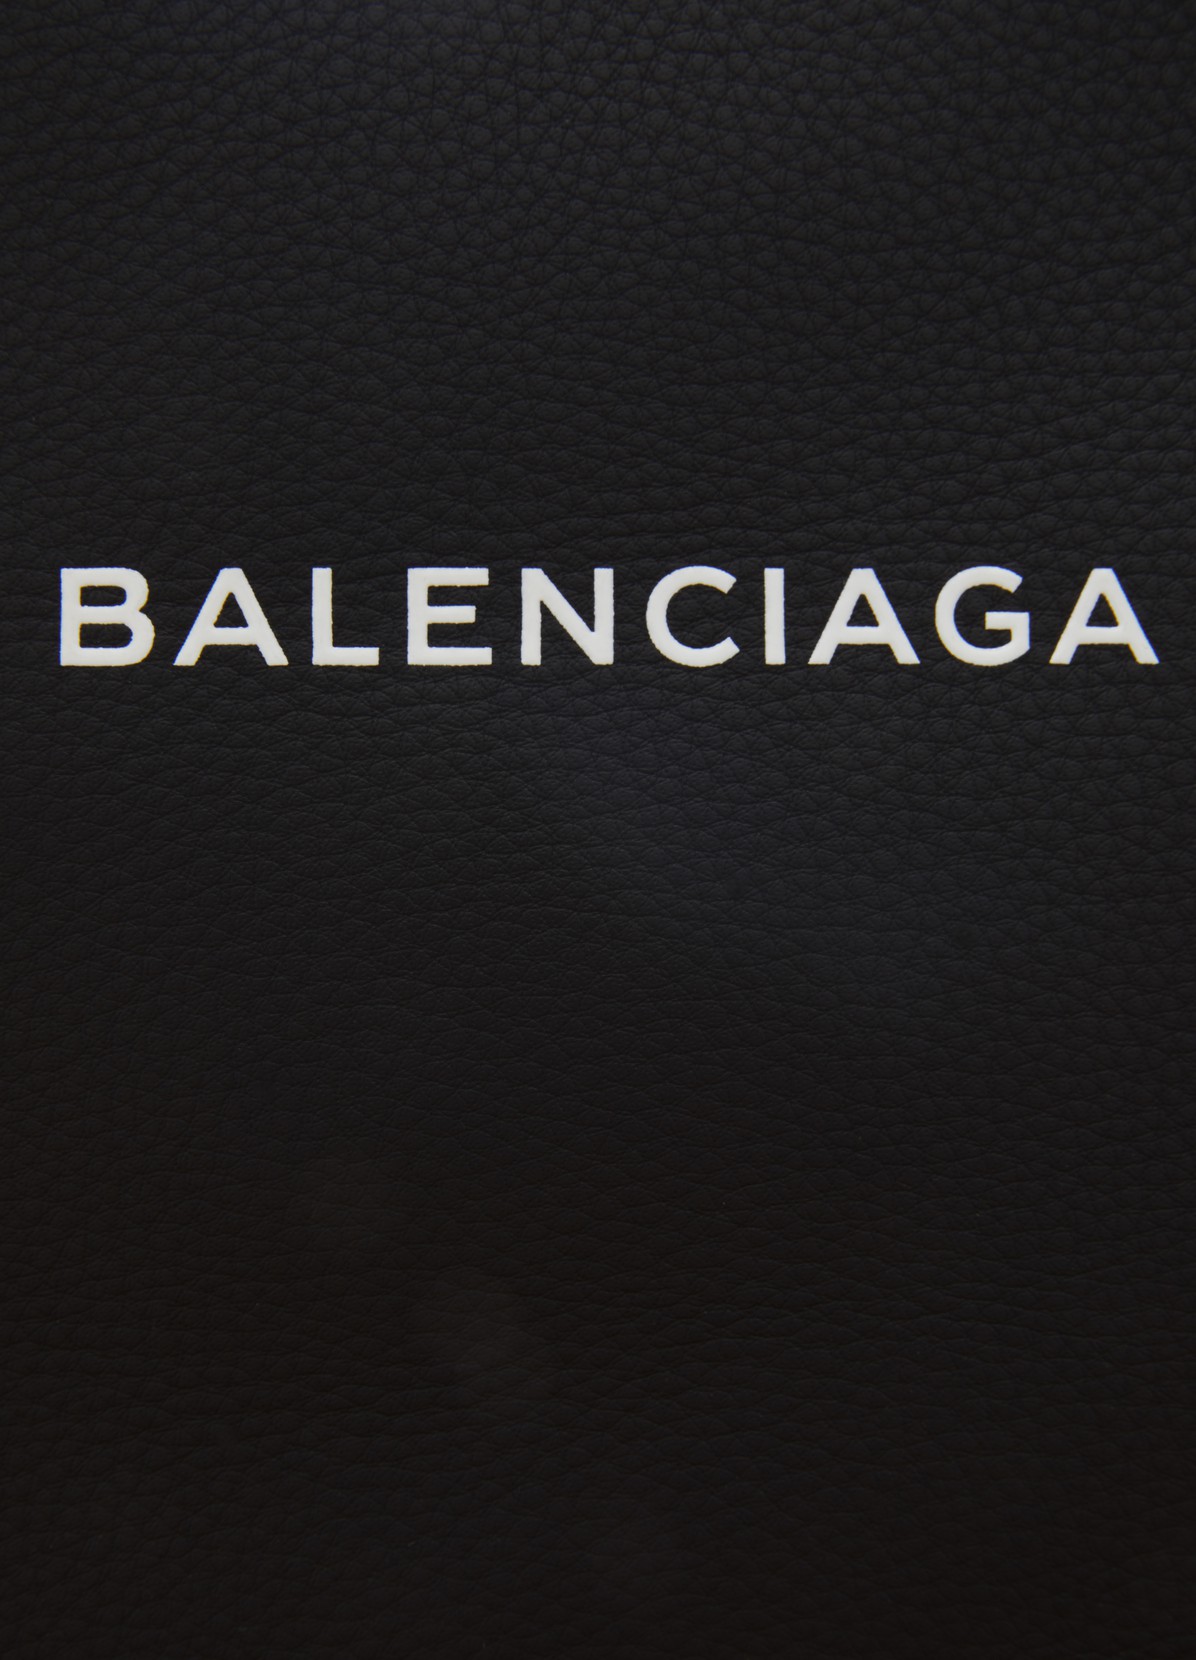 balenciaga logo download